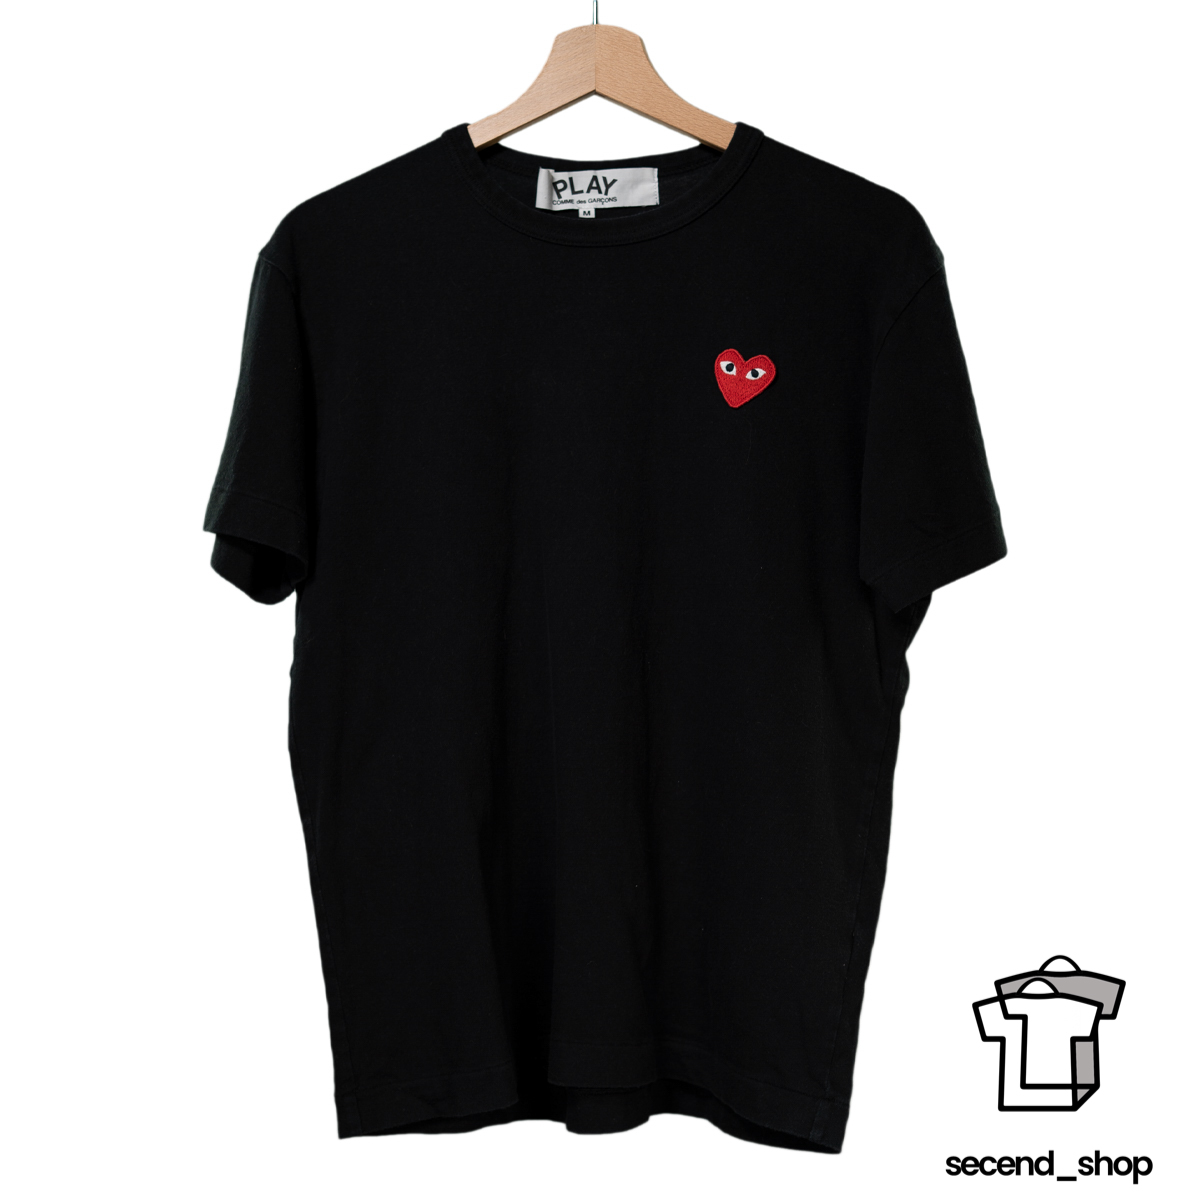 CDG tshirt – Secend Shop